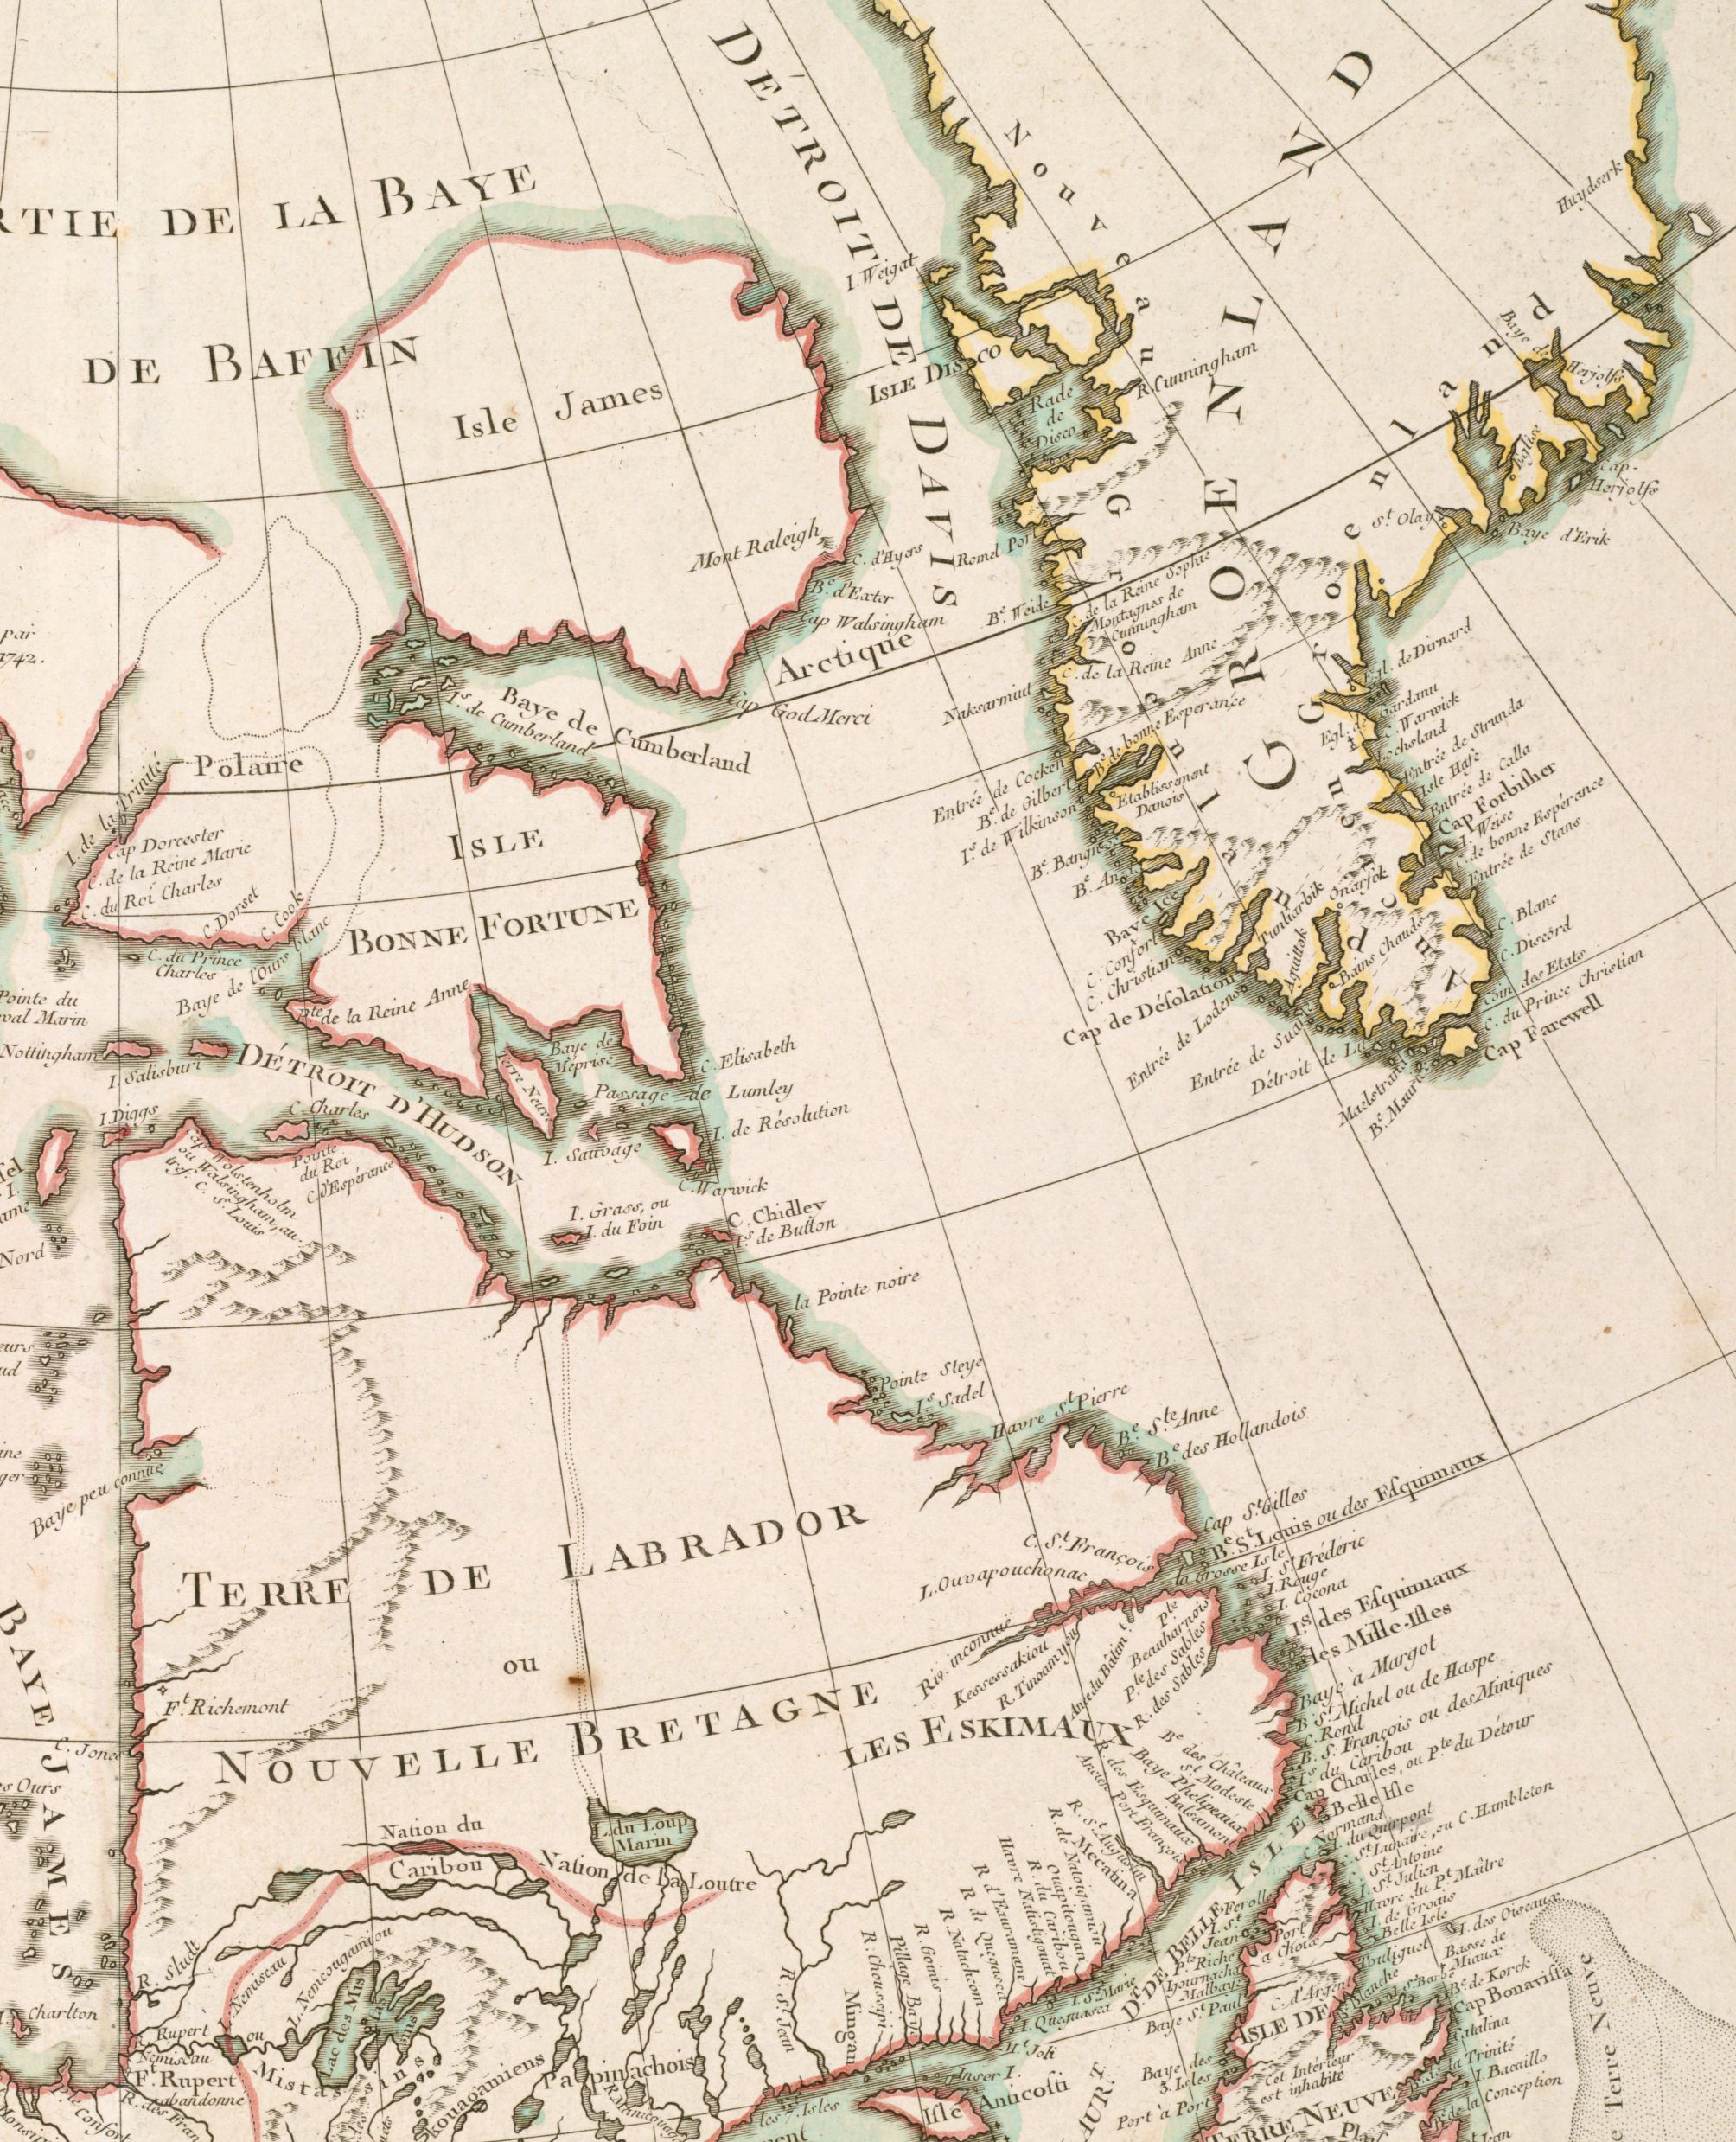 Section of Bonne's map entitled "Partie de l'Amérique Septentrionale, Qui Comprend le Canada, la Louisiane, le Labrador, le Groenland, la Nouvelle Angleterre, la Floride" displaying northeast Canada and Greenland